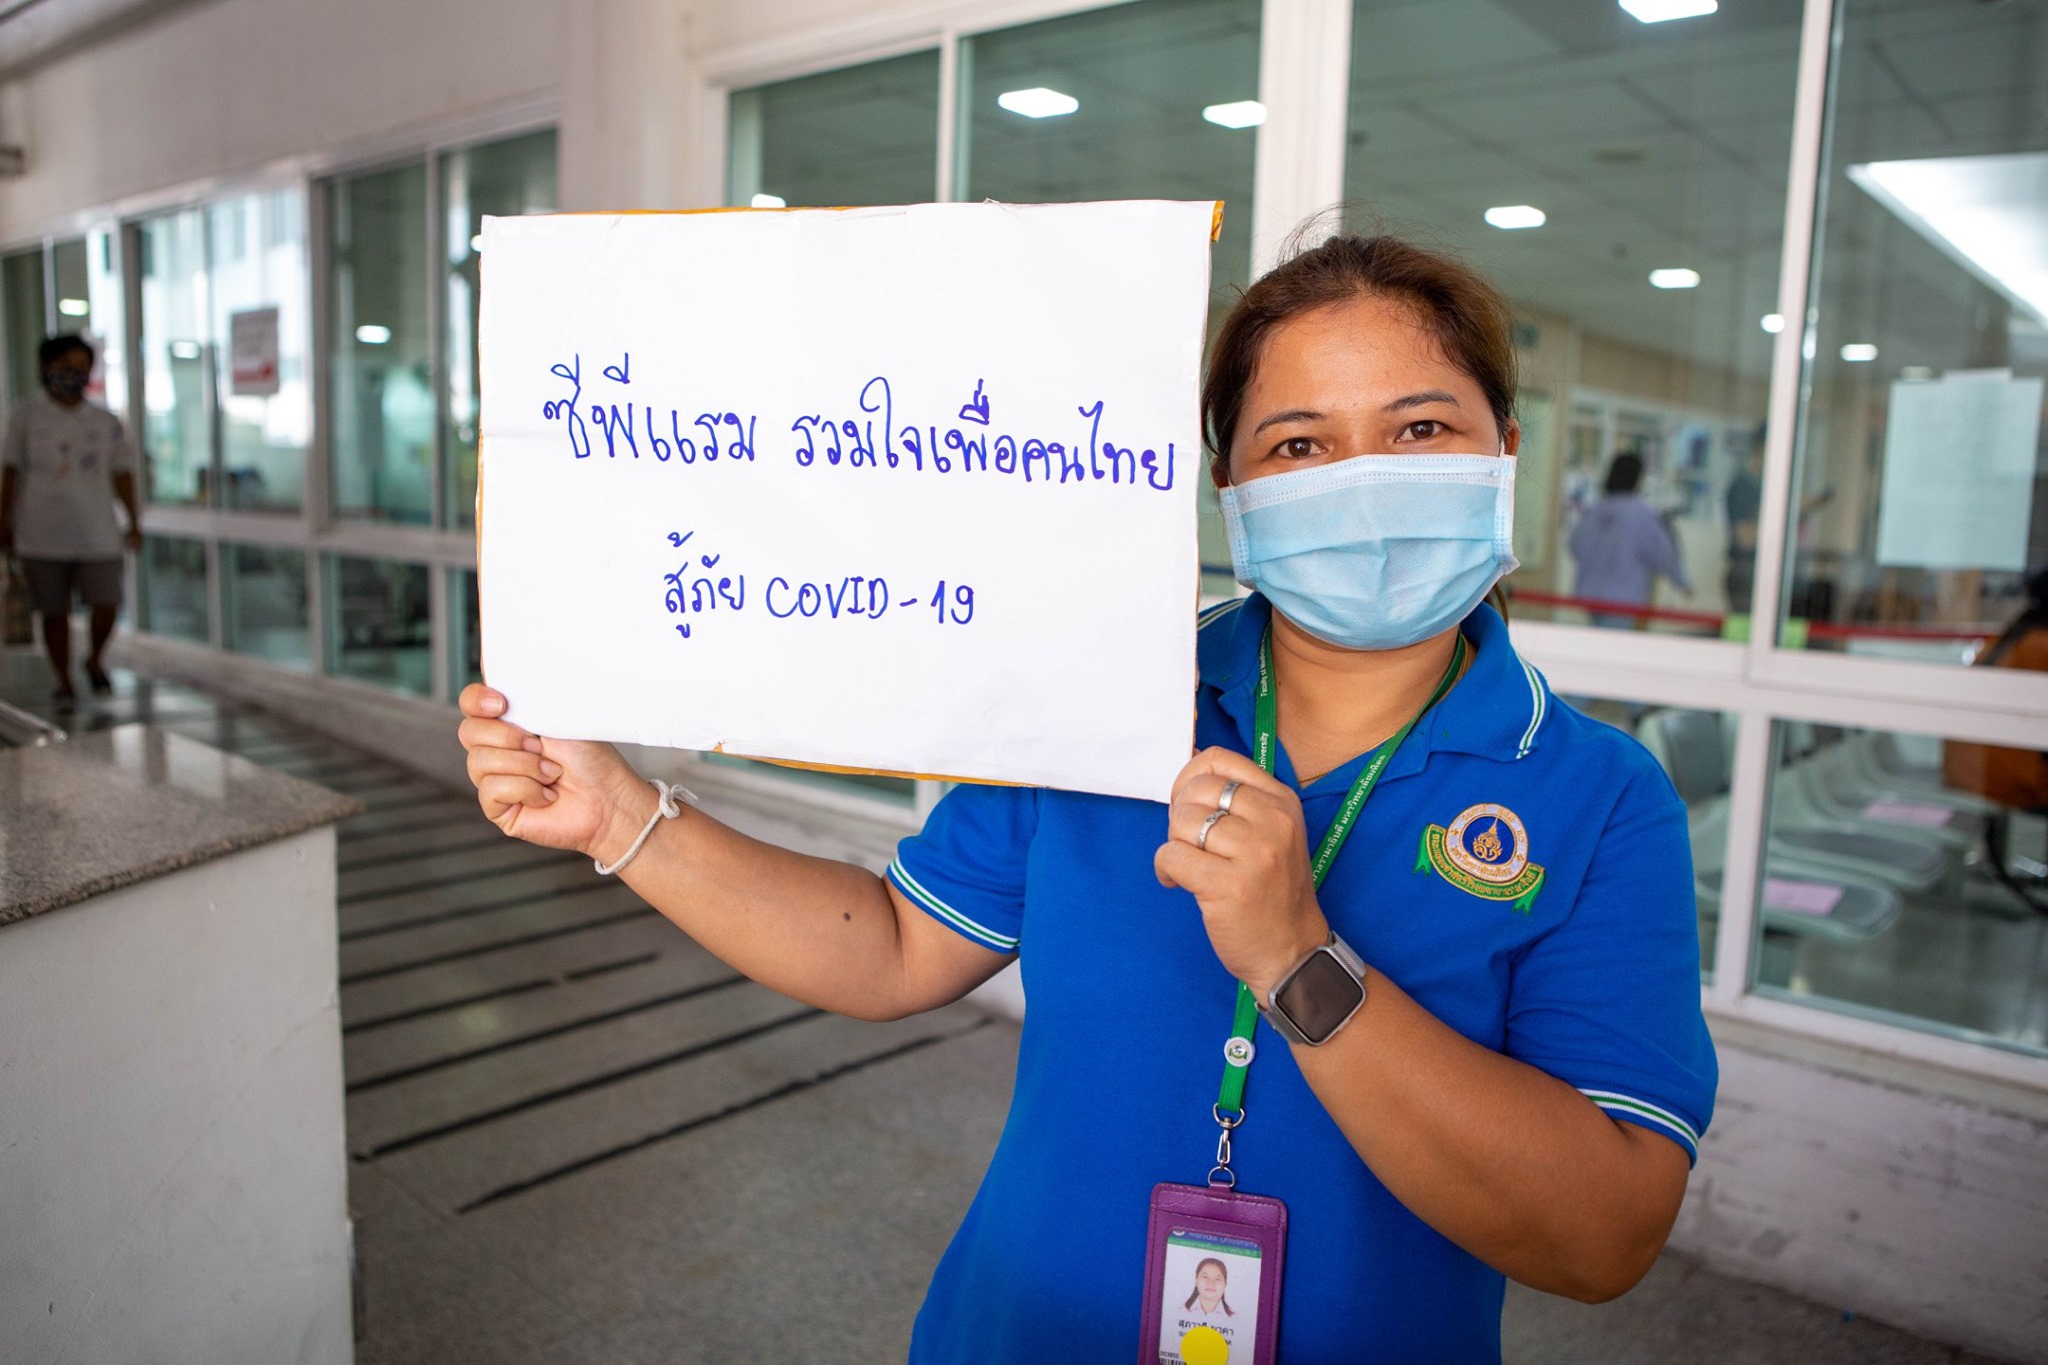 ภาพข่าว: ซีพีแรม เคียงข้างคนไทยร่วมฝ่าวิกฤตโควิด-19 มอบอาหารพร้อมรับประทานและน้ำดื่มให้บุคลากรทางการแพทย์ - สาธารณสุข อย่างต่อเนื่อง